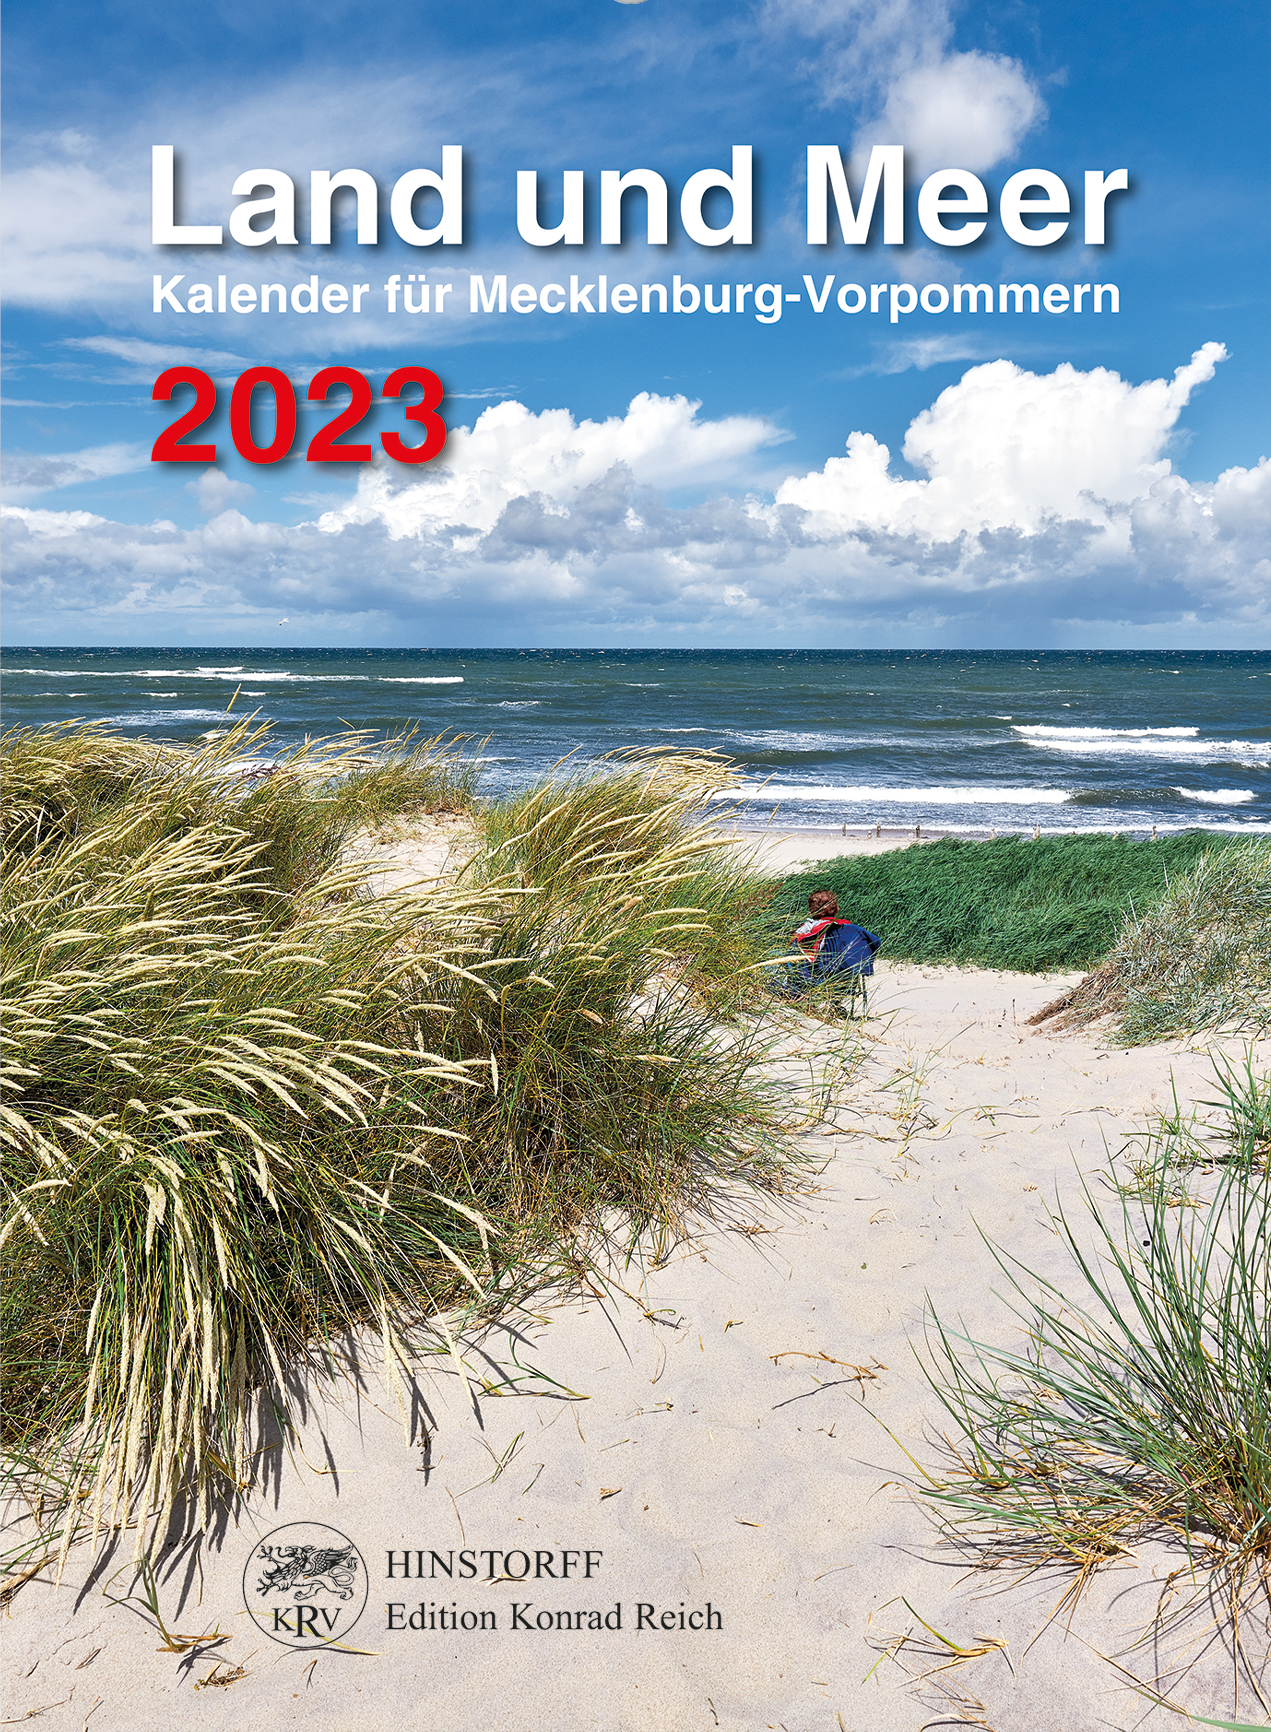 Land und Meer 2023. Kalender für Mecklenburg-Vorpommern